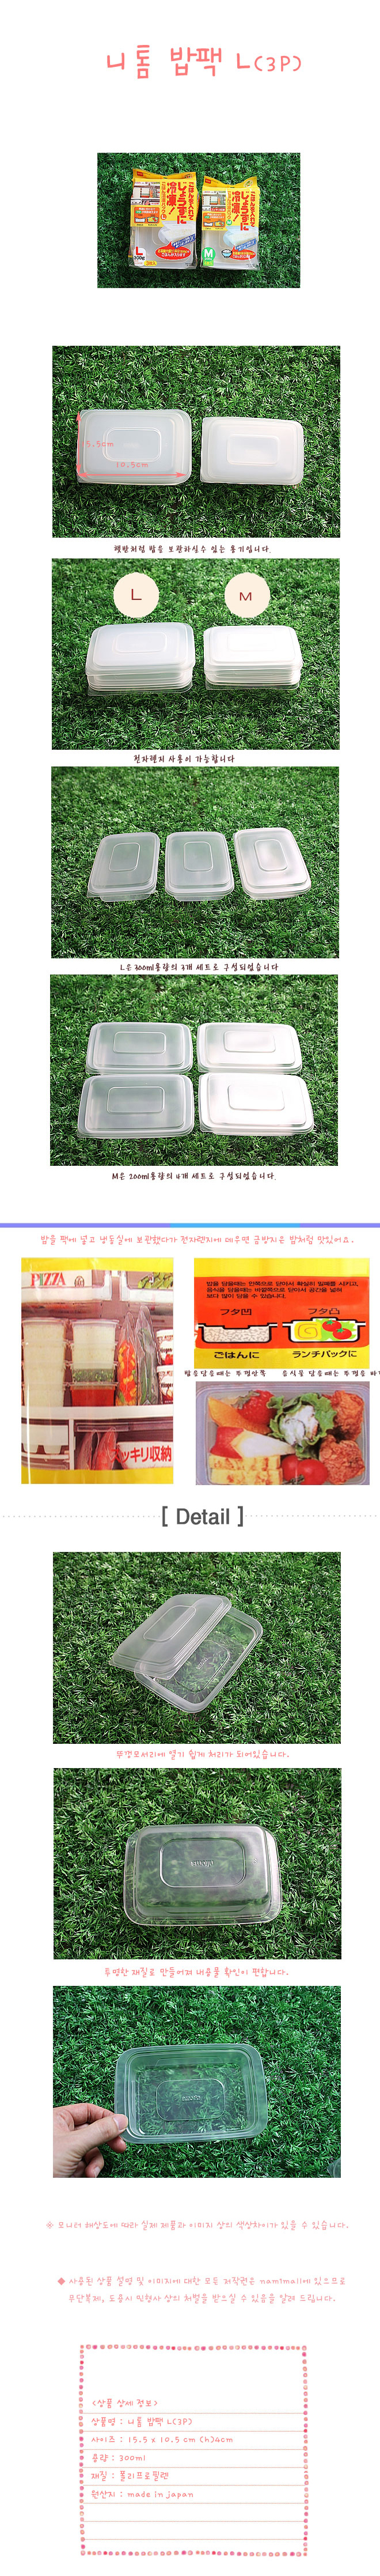 니톰 전자렌지용 밥팩 L 300ml 3p 전자레인지밥팩 냉동실전용밥보관용기 밀폐용기 밥팩 저장용기